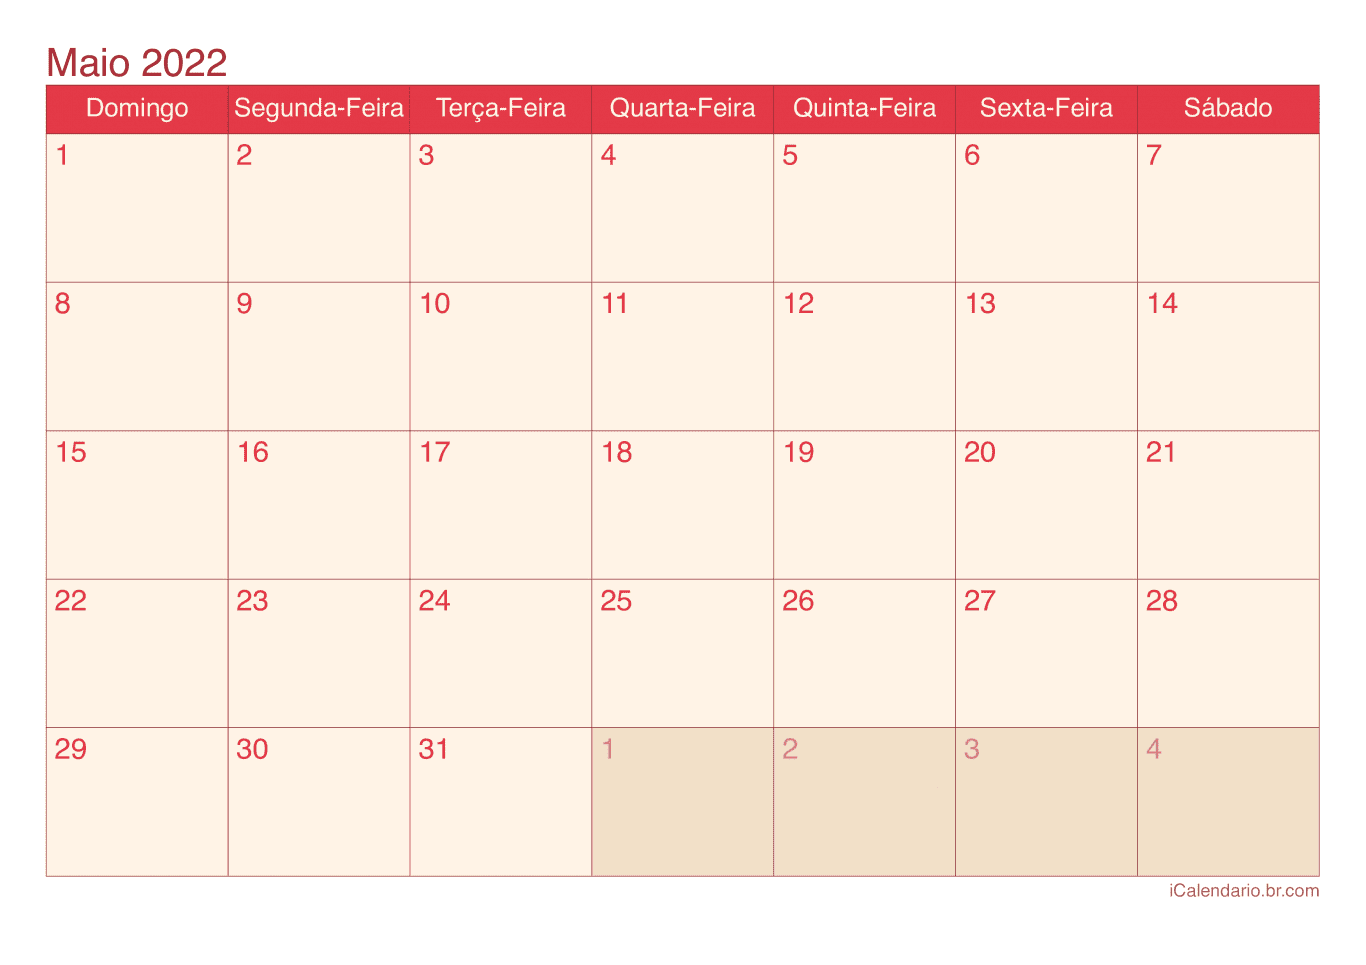 Calendário de maio 2022 - Cherry